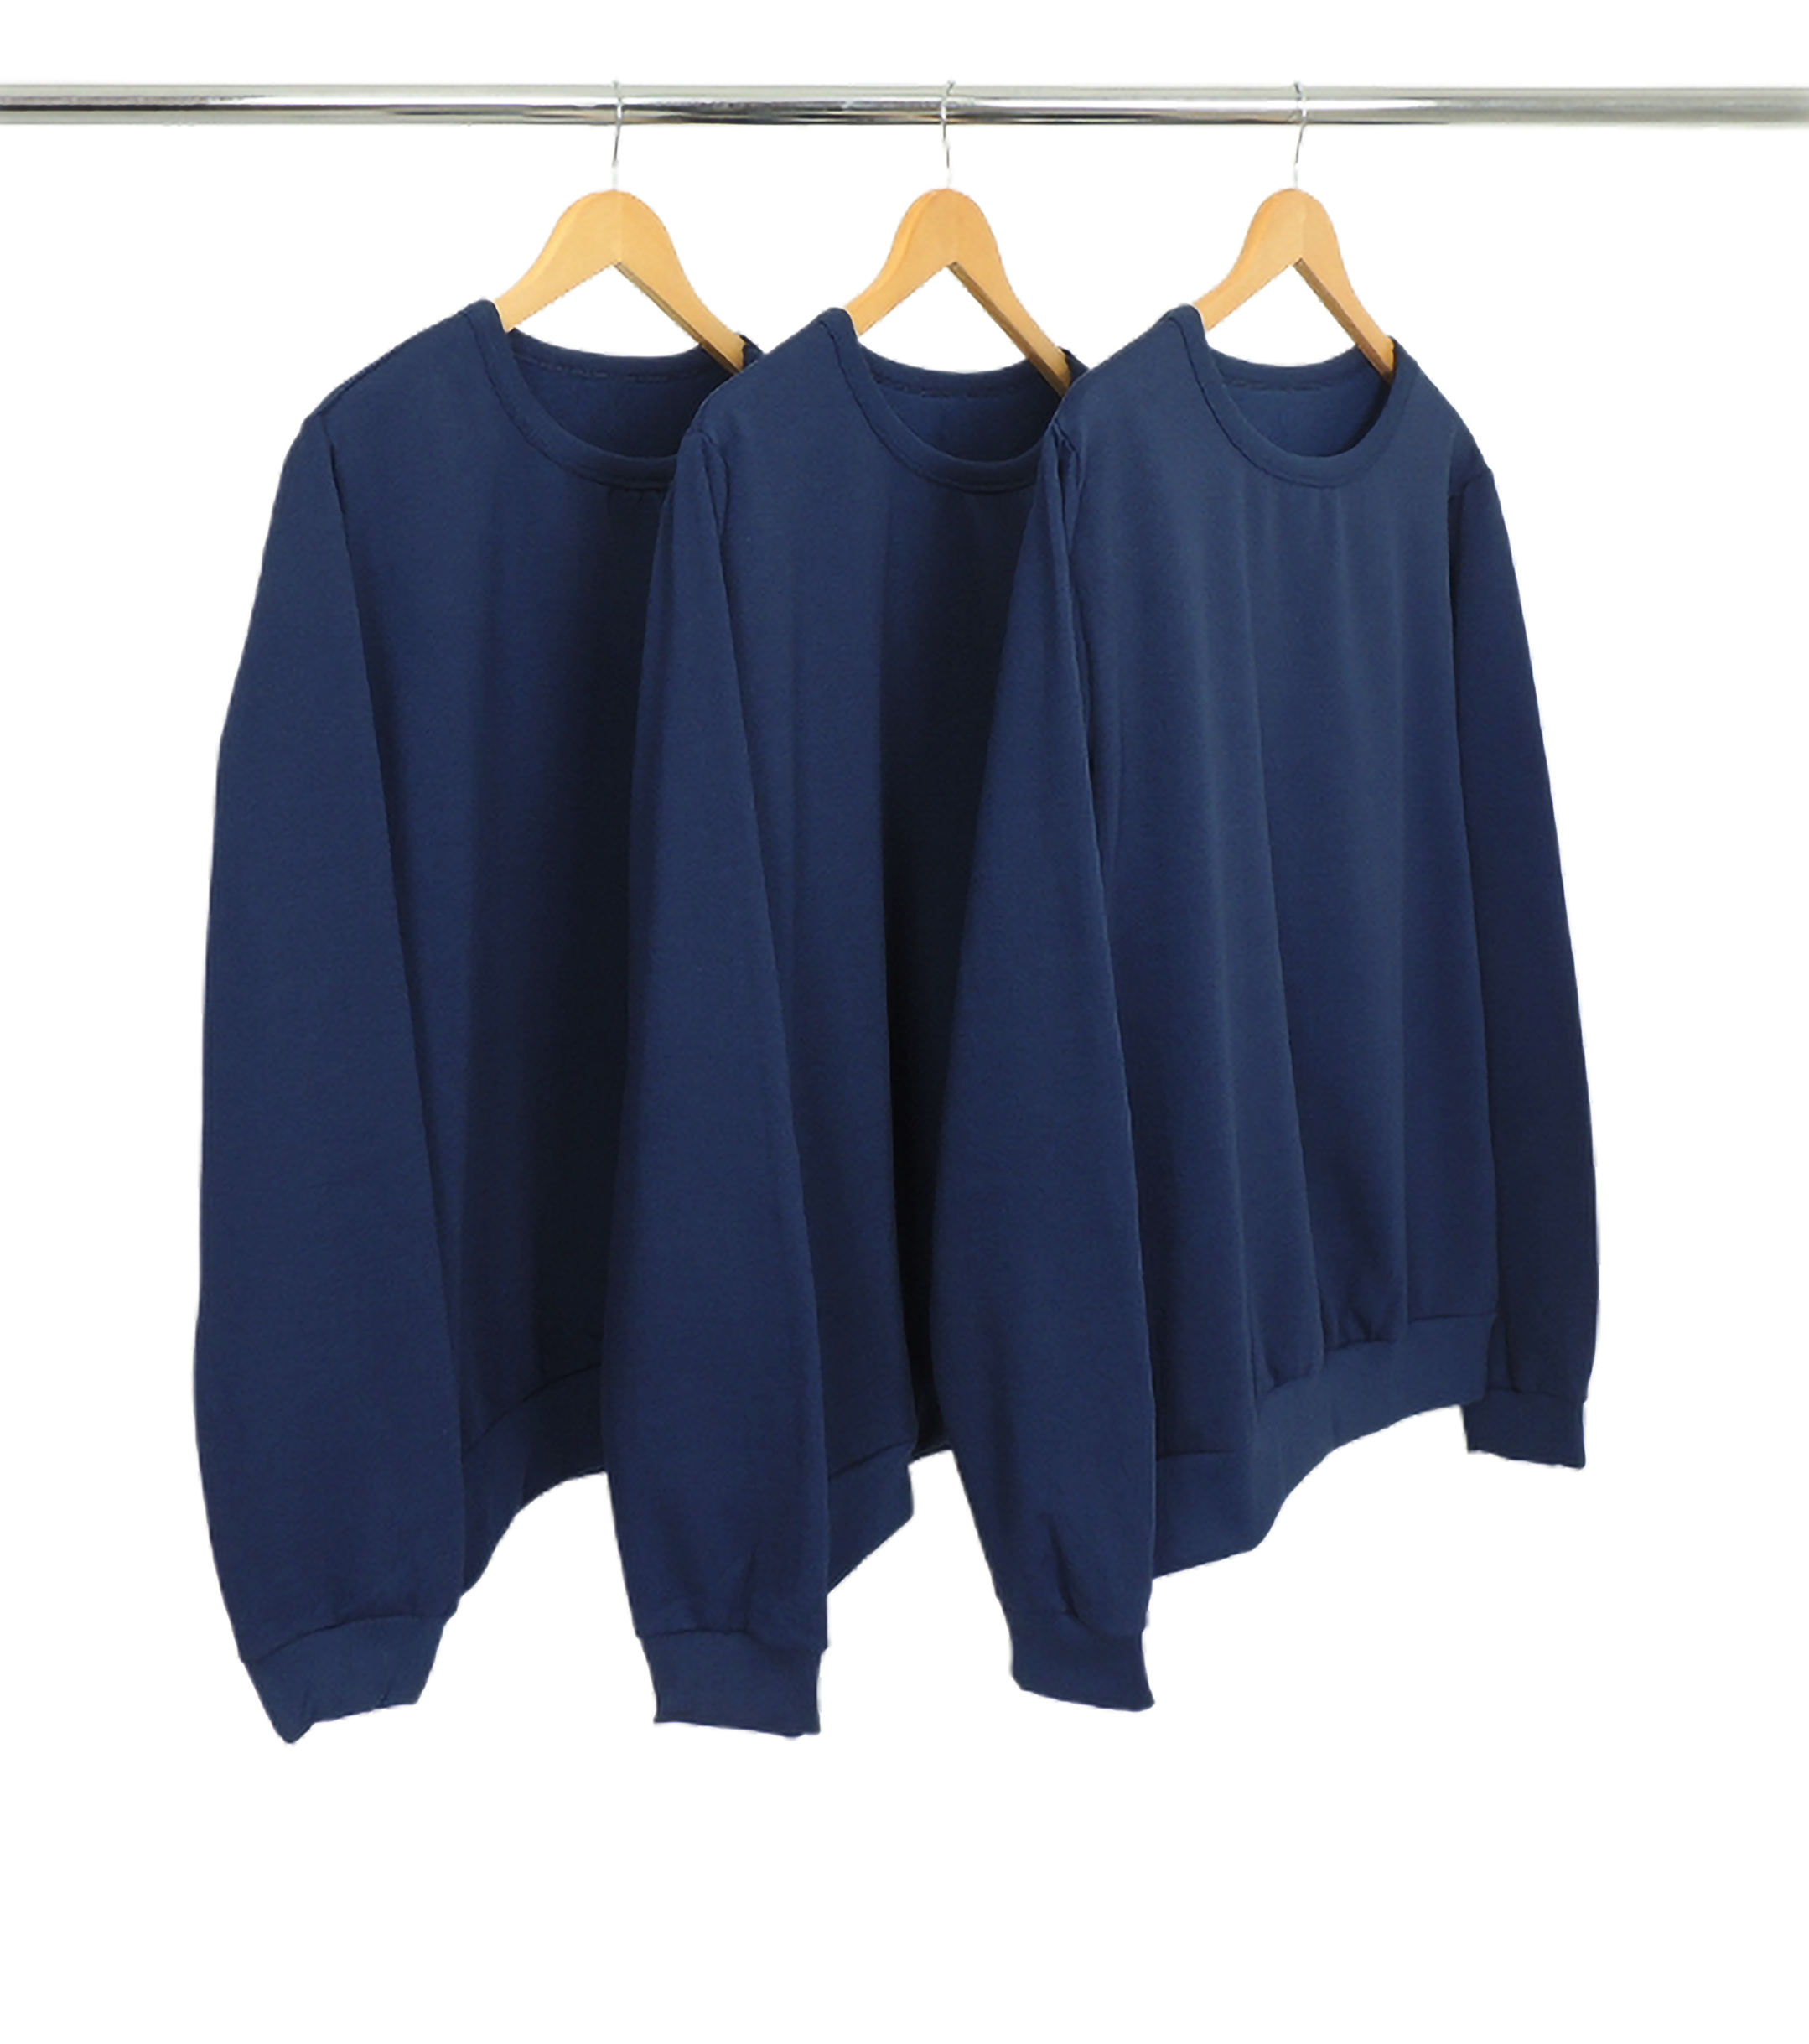 Kit 3 Blusões de Moletom Azul Marinho